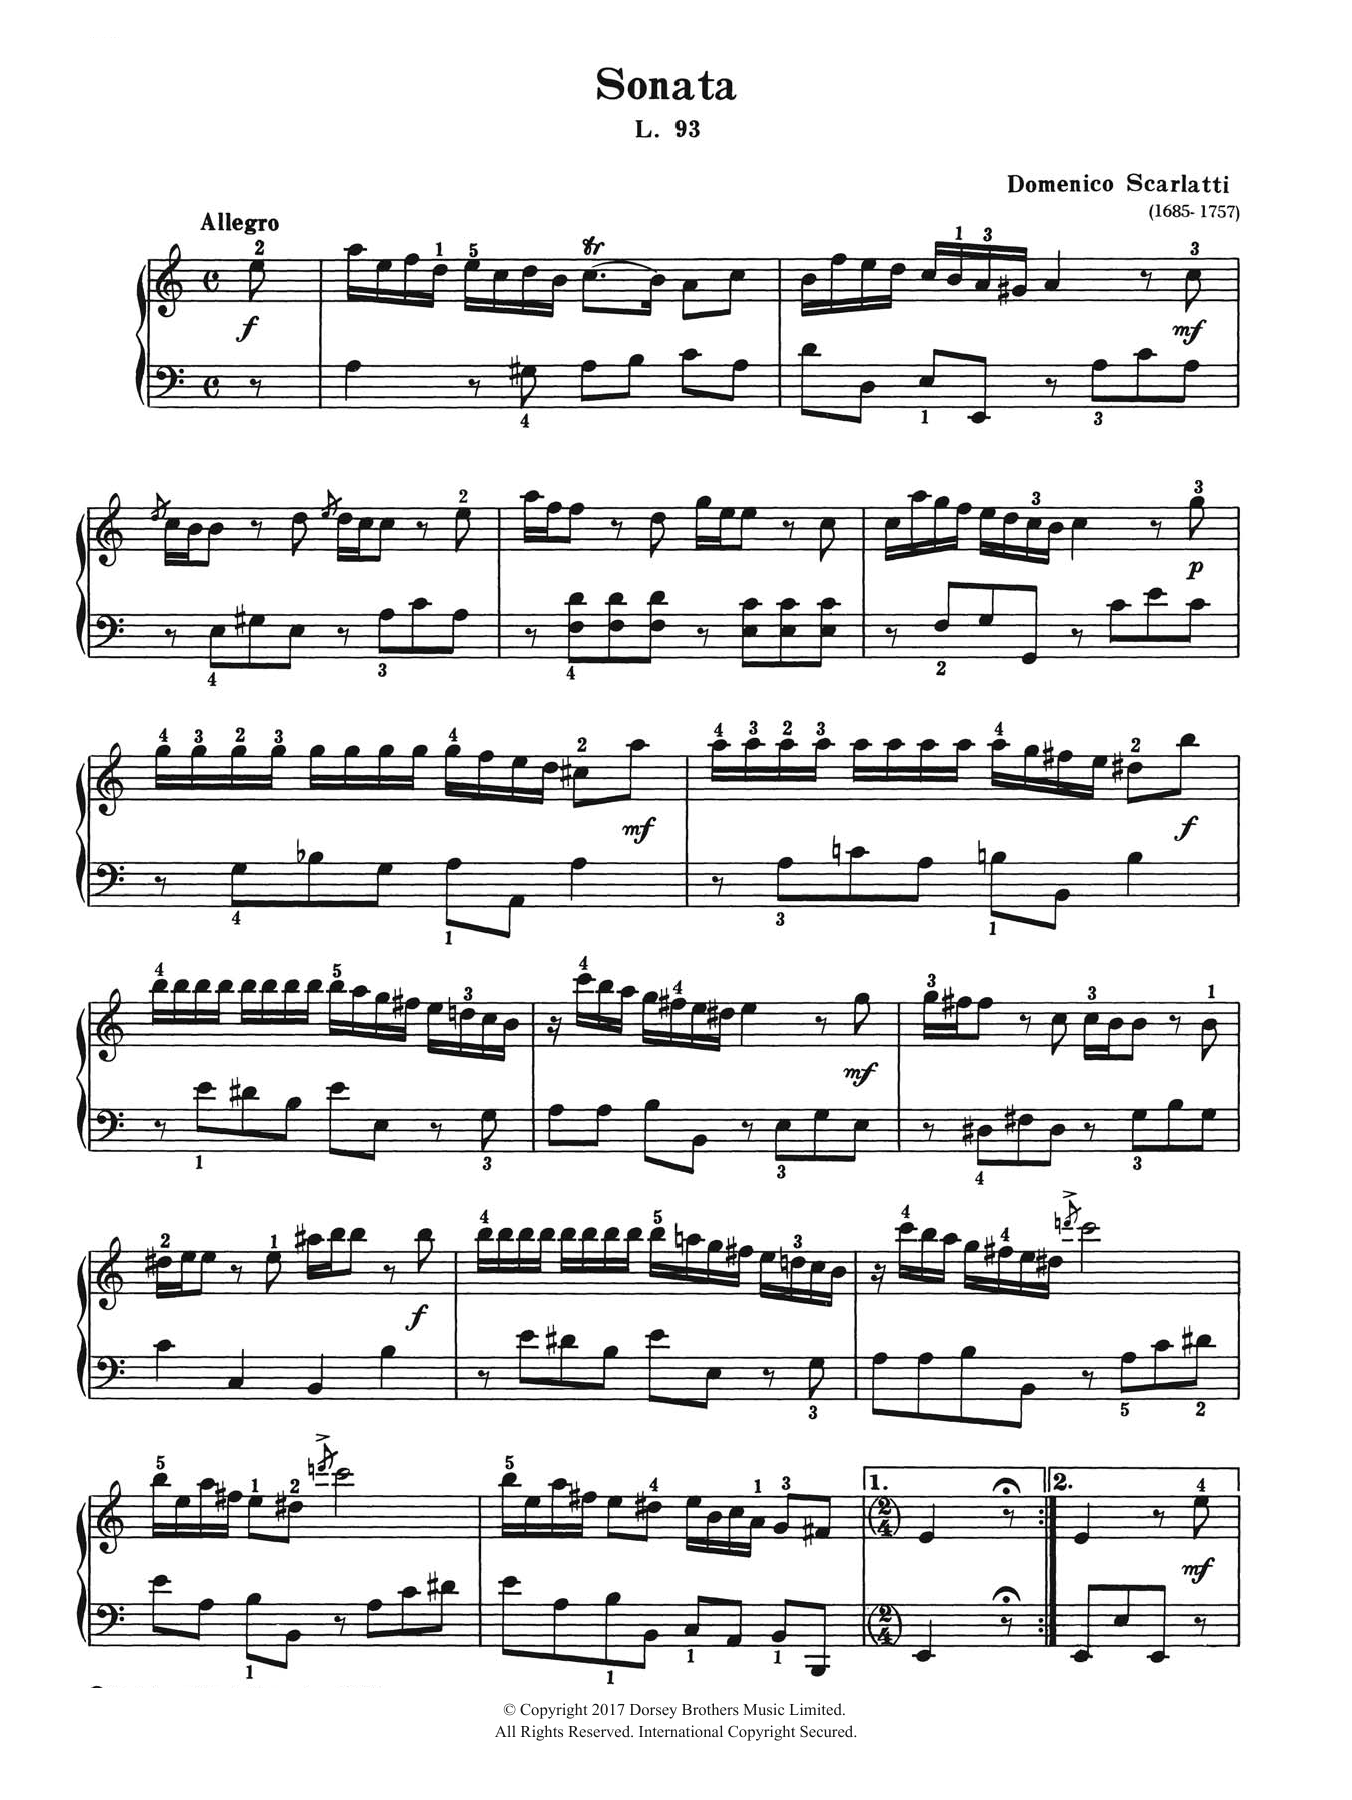 Domenico Scarlatti Sonata In A Minor L. 93 Sheet Music Notes & Chords for Piano - Download or Print PDF